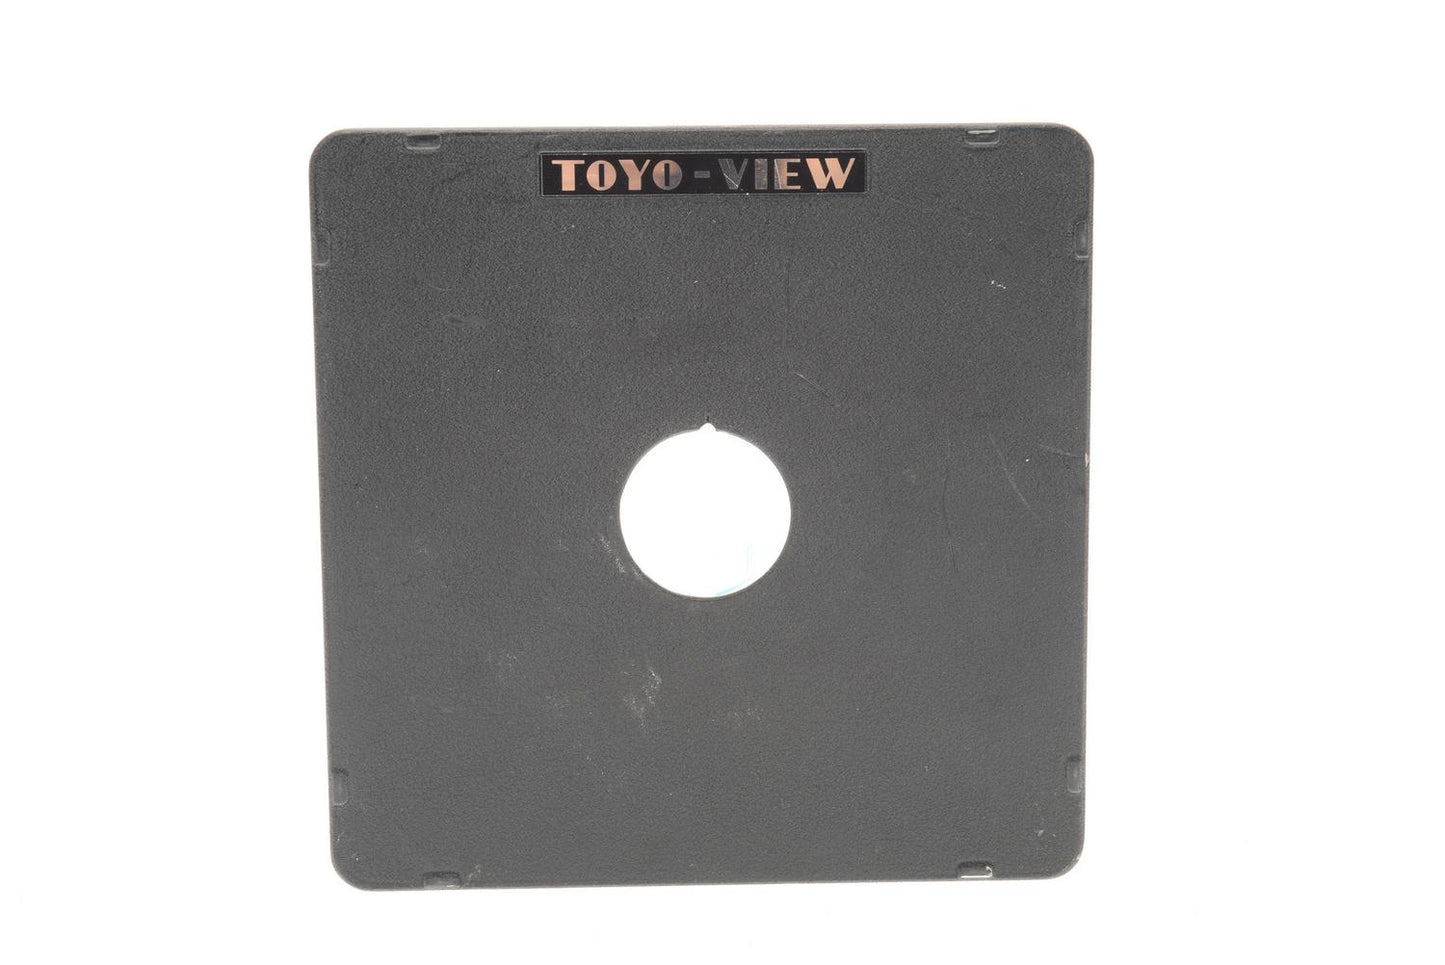 Toyo #0 Lens Board - Accessory